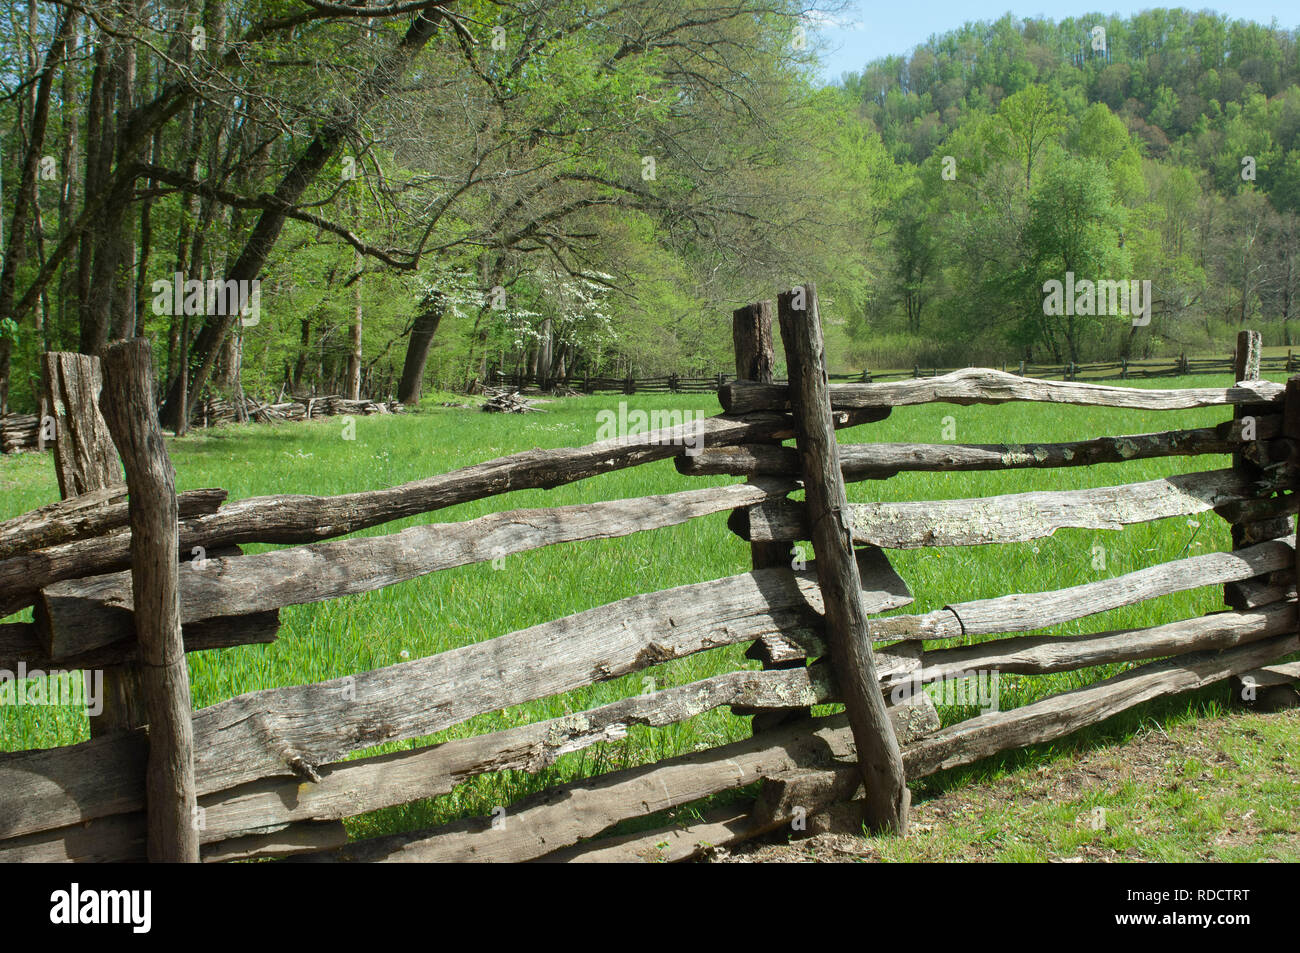 Clôture en lisse, Great Smoky Mountains National Park, frontière de NC et TN. Photographie numérique Banque D'Images